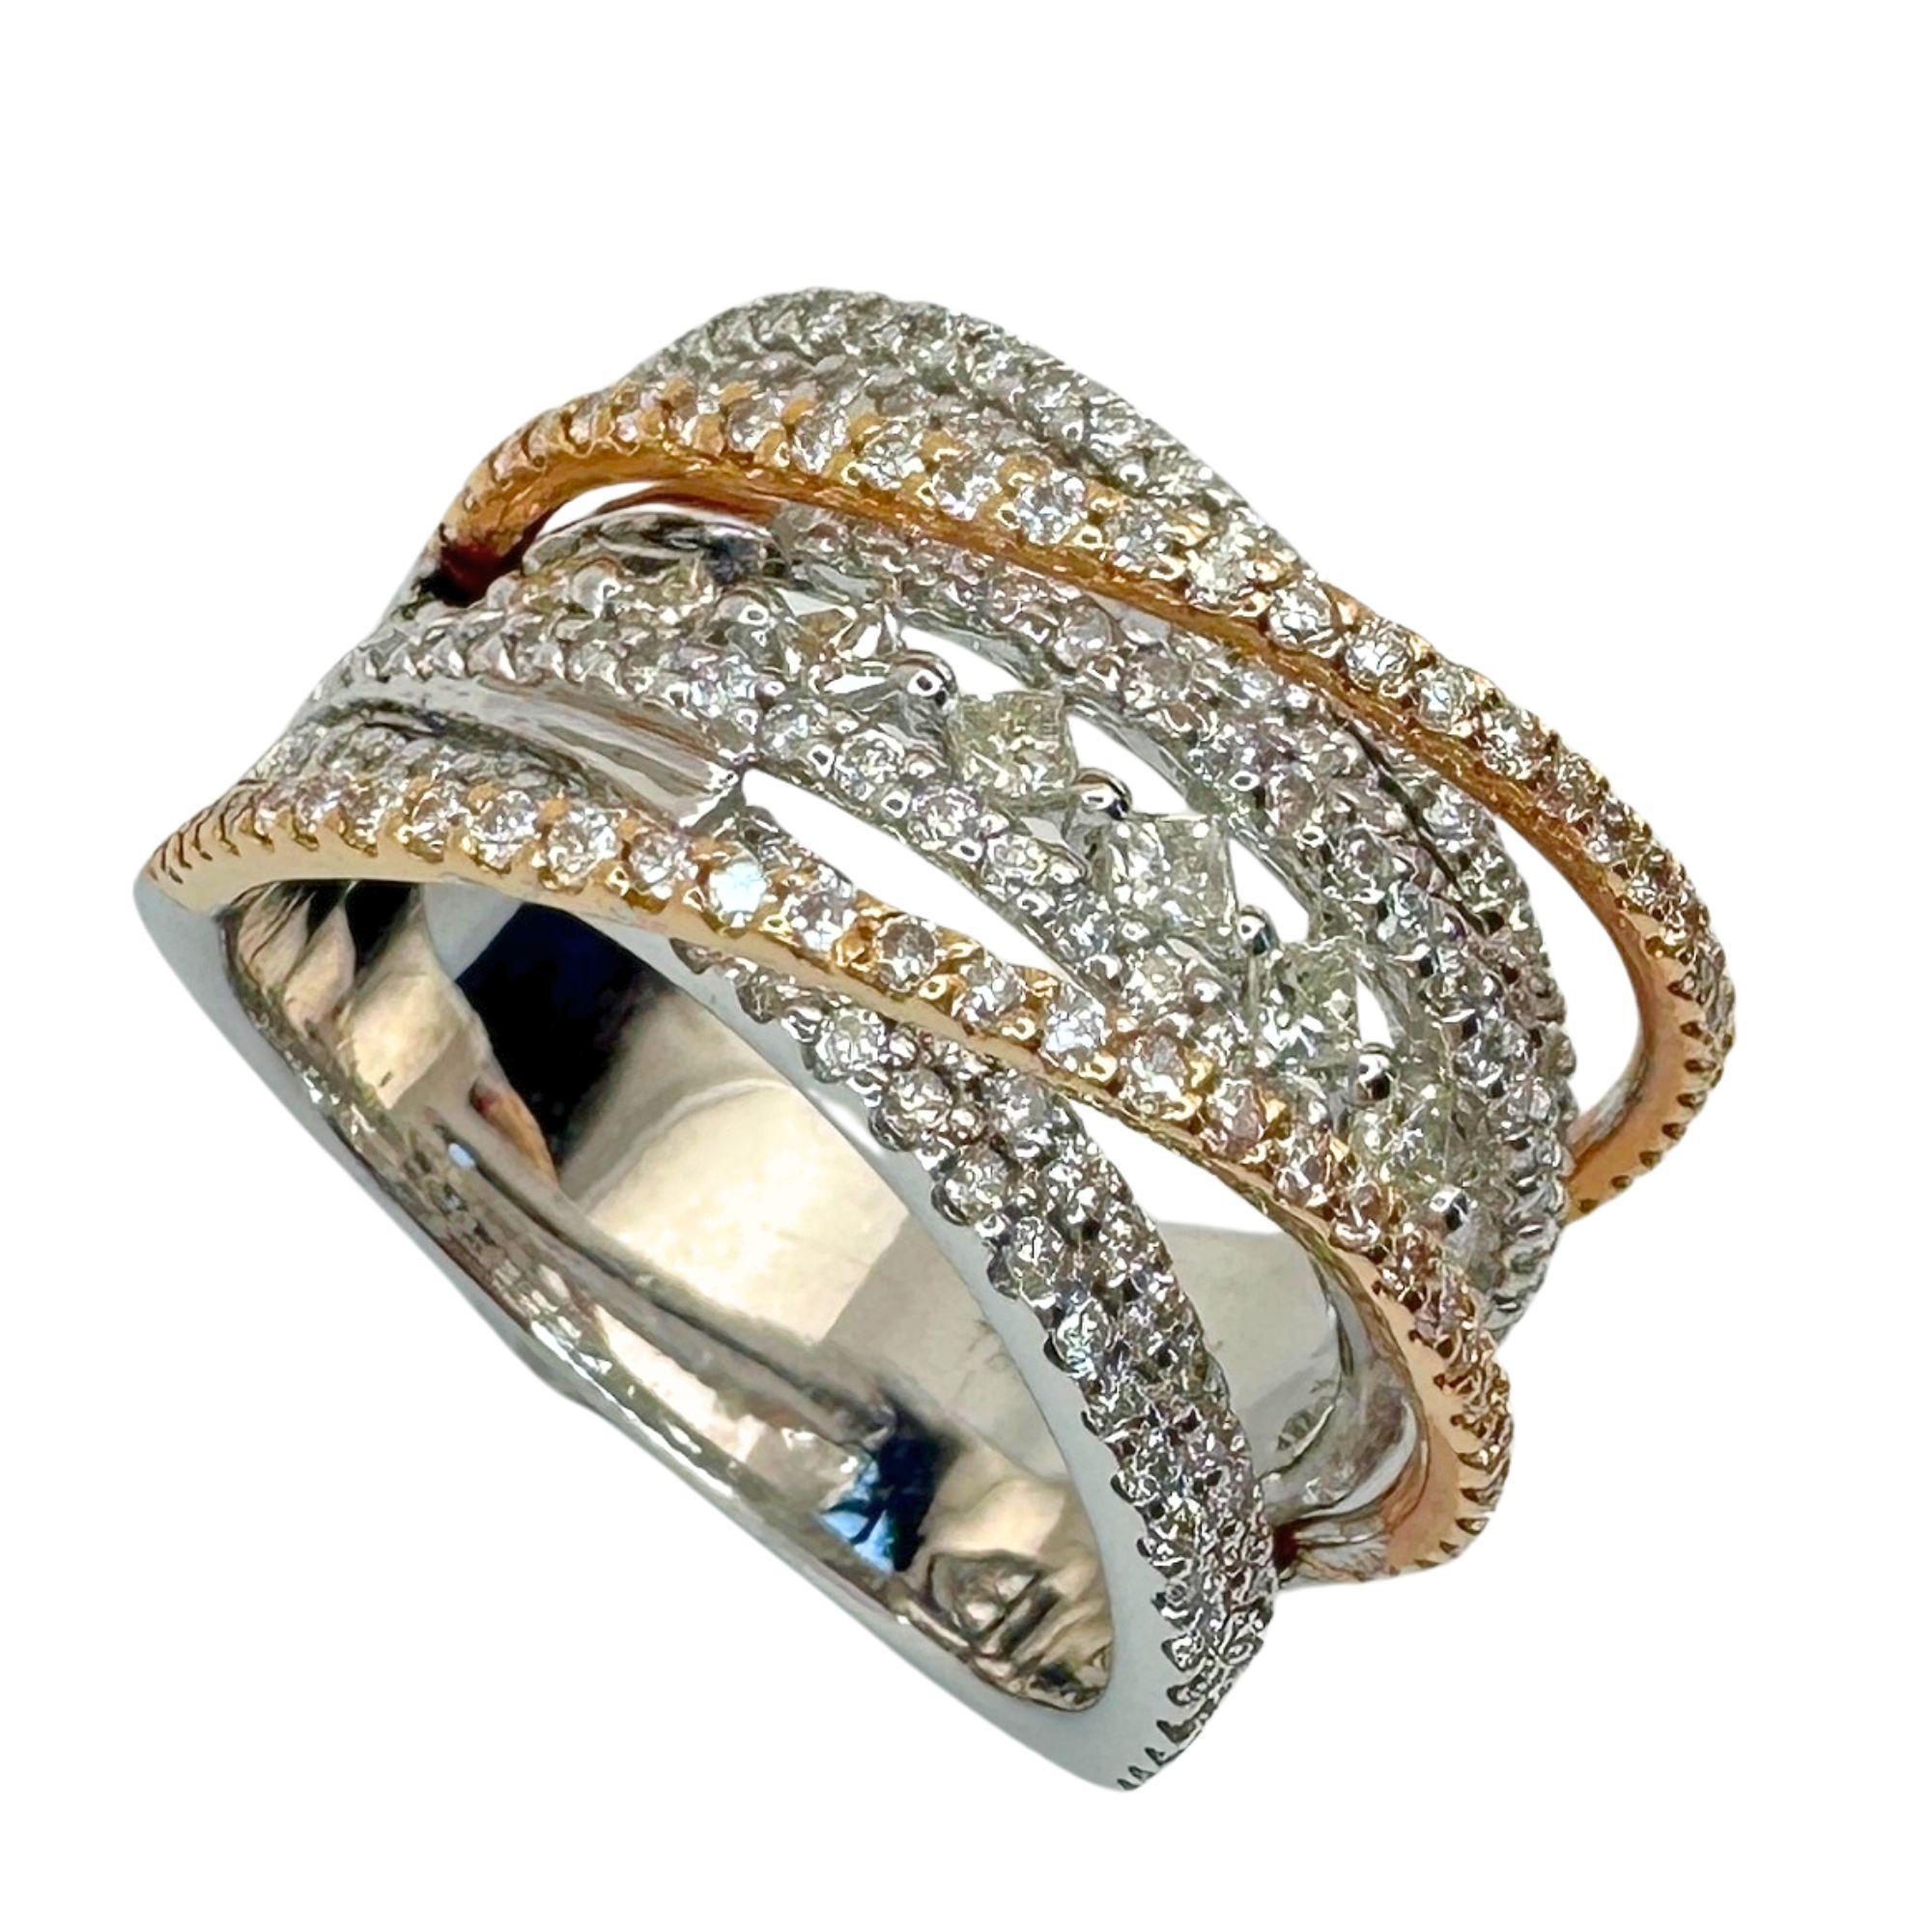 Dieser elegante 18-karätige Diamantring mit einer Ringgröße von 7 hat ein Gesamtgewicht von 1,27 Karat. Die atemberaubende Reihe von Diamanten im Prinzessinnenschliff in der Mitte mit einem Gesamtgewicht von 0,32 Karat wird durch runde Diamanten von